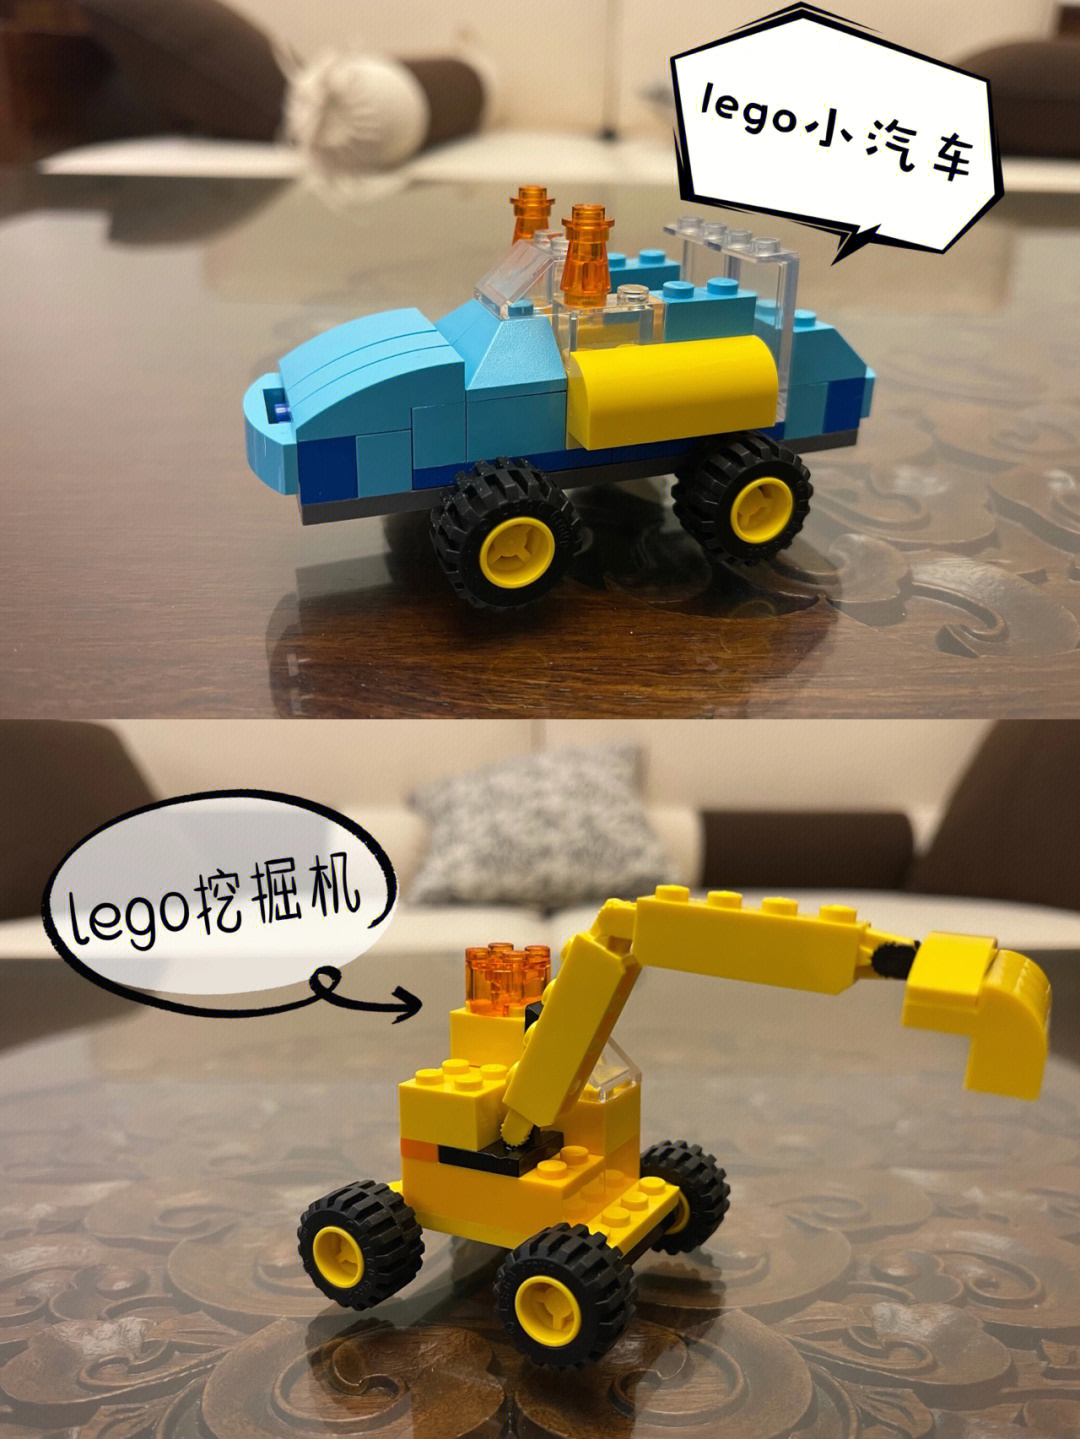 给儿子拼的小车车,蓝色小汽车是baba自己随便拼的黄色挖掘机是按照